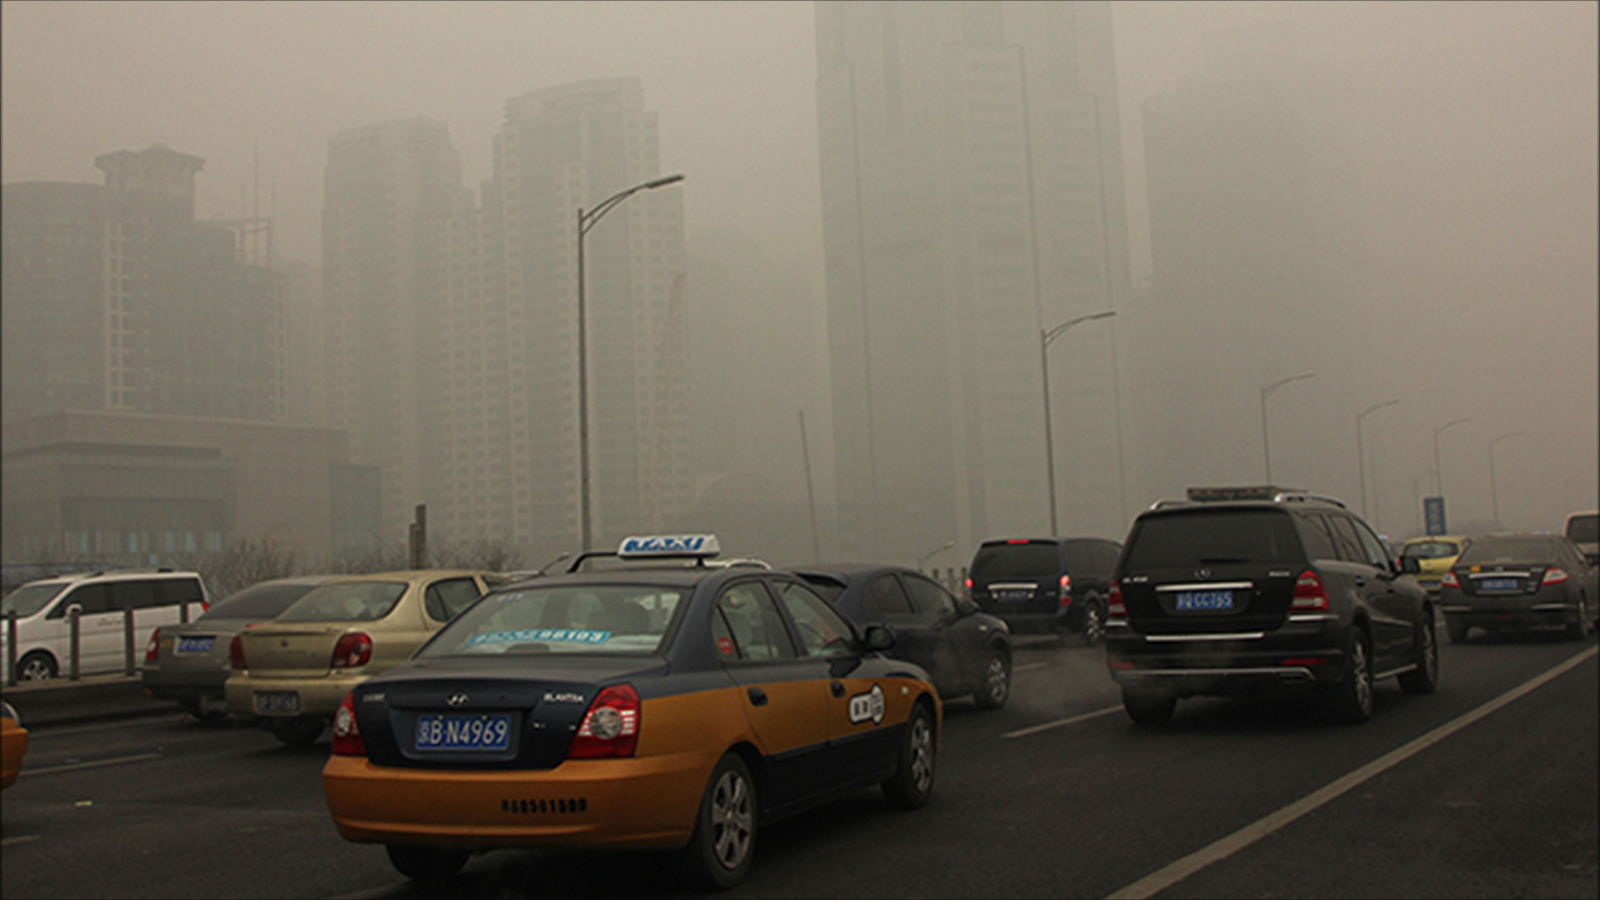 ‪الضباب الدخاني الناجم عن الصناعات الثقيلة يغطي سماء العاصمة الصينية‬  (الجزيرة)